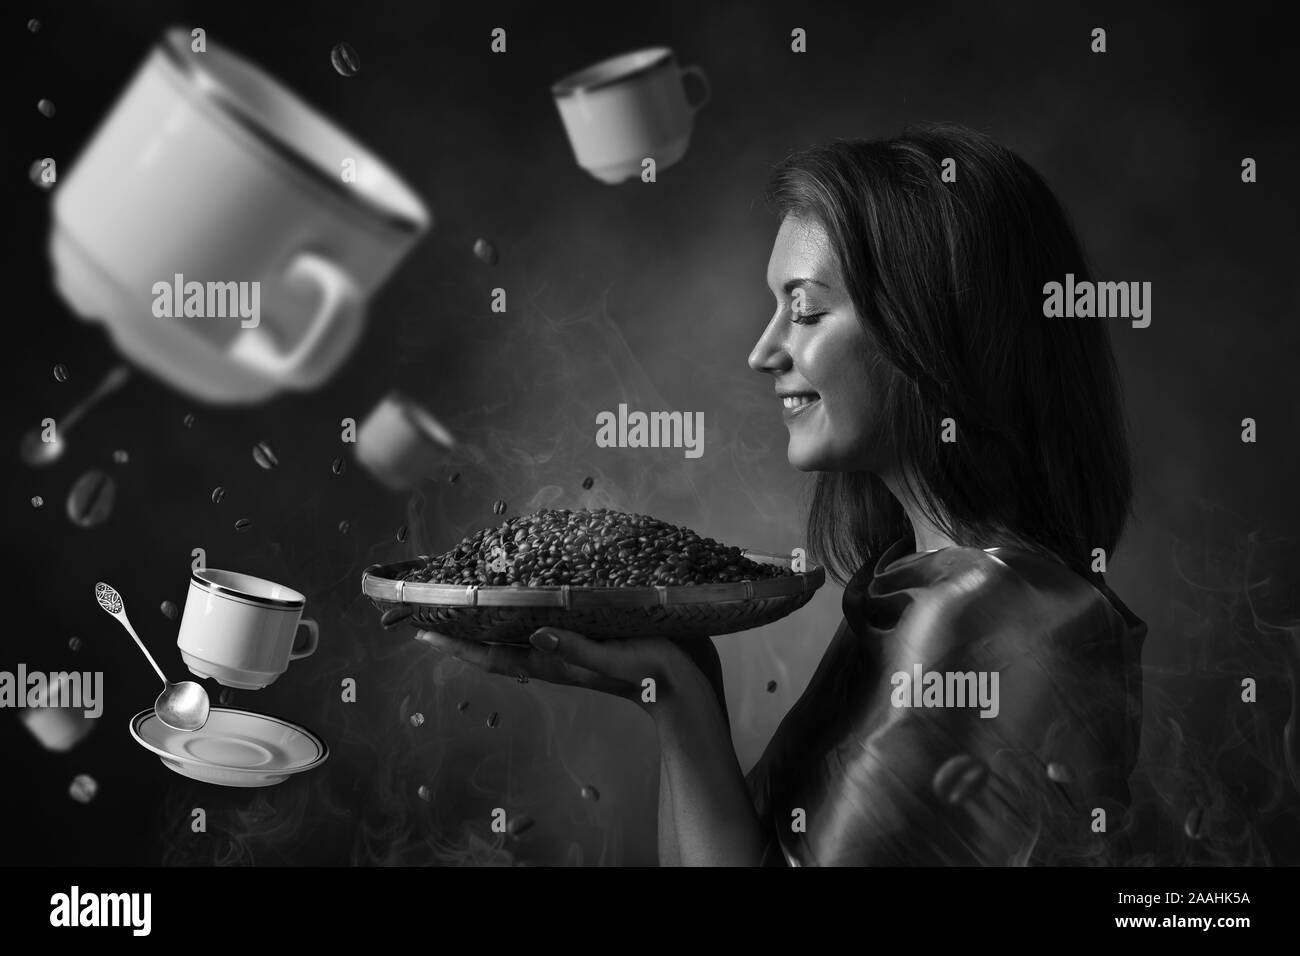 Junge schöne Frau mit gerösteten Kaffeebohnen. Fliegende Kaffeetassen, Untertassen und Löffeln. Konzeptionelle Bild zum Thema Kaffee. Schwarz und Weiß. Stockfoto